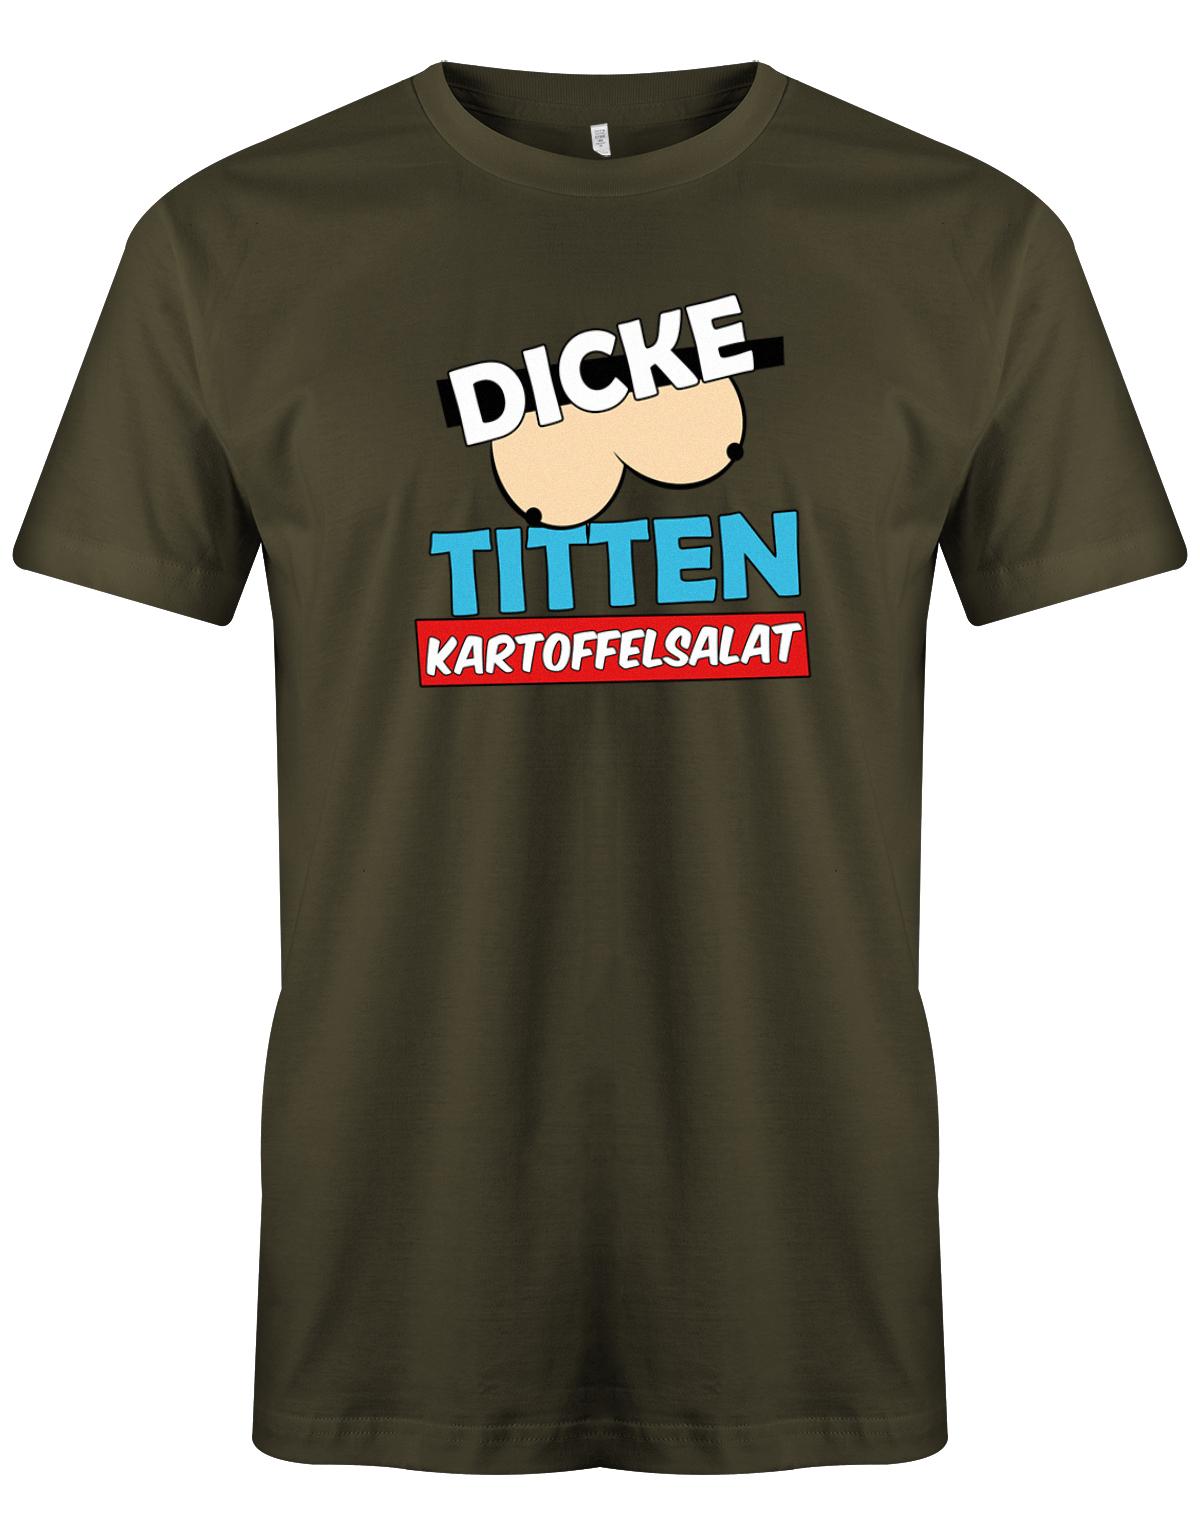 Dicke-Titten-Kartoffelsalat-Herren-Shirt-army